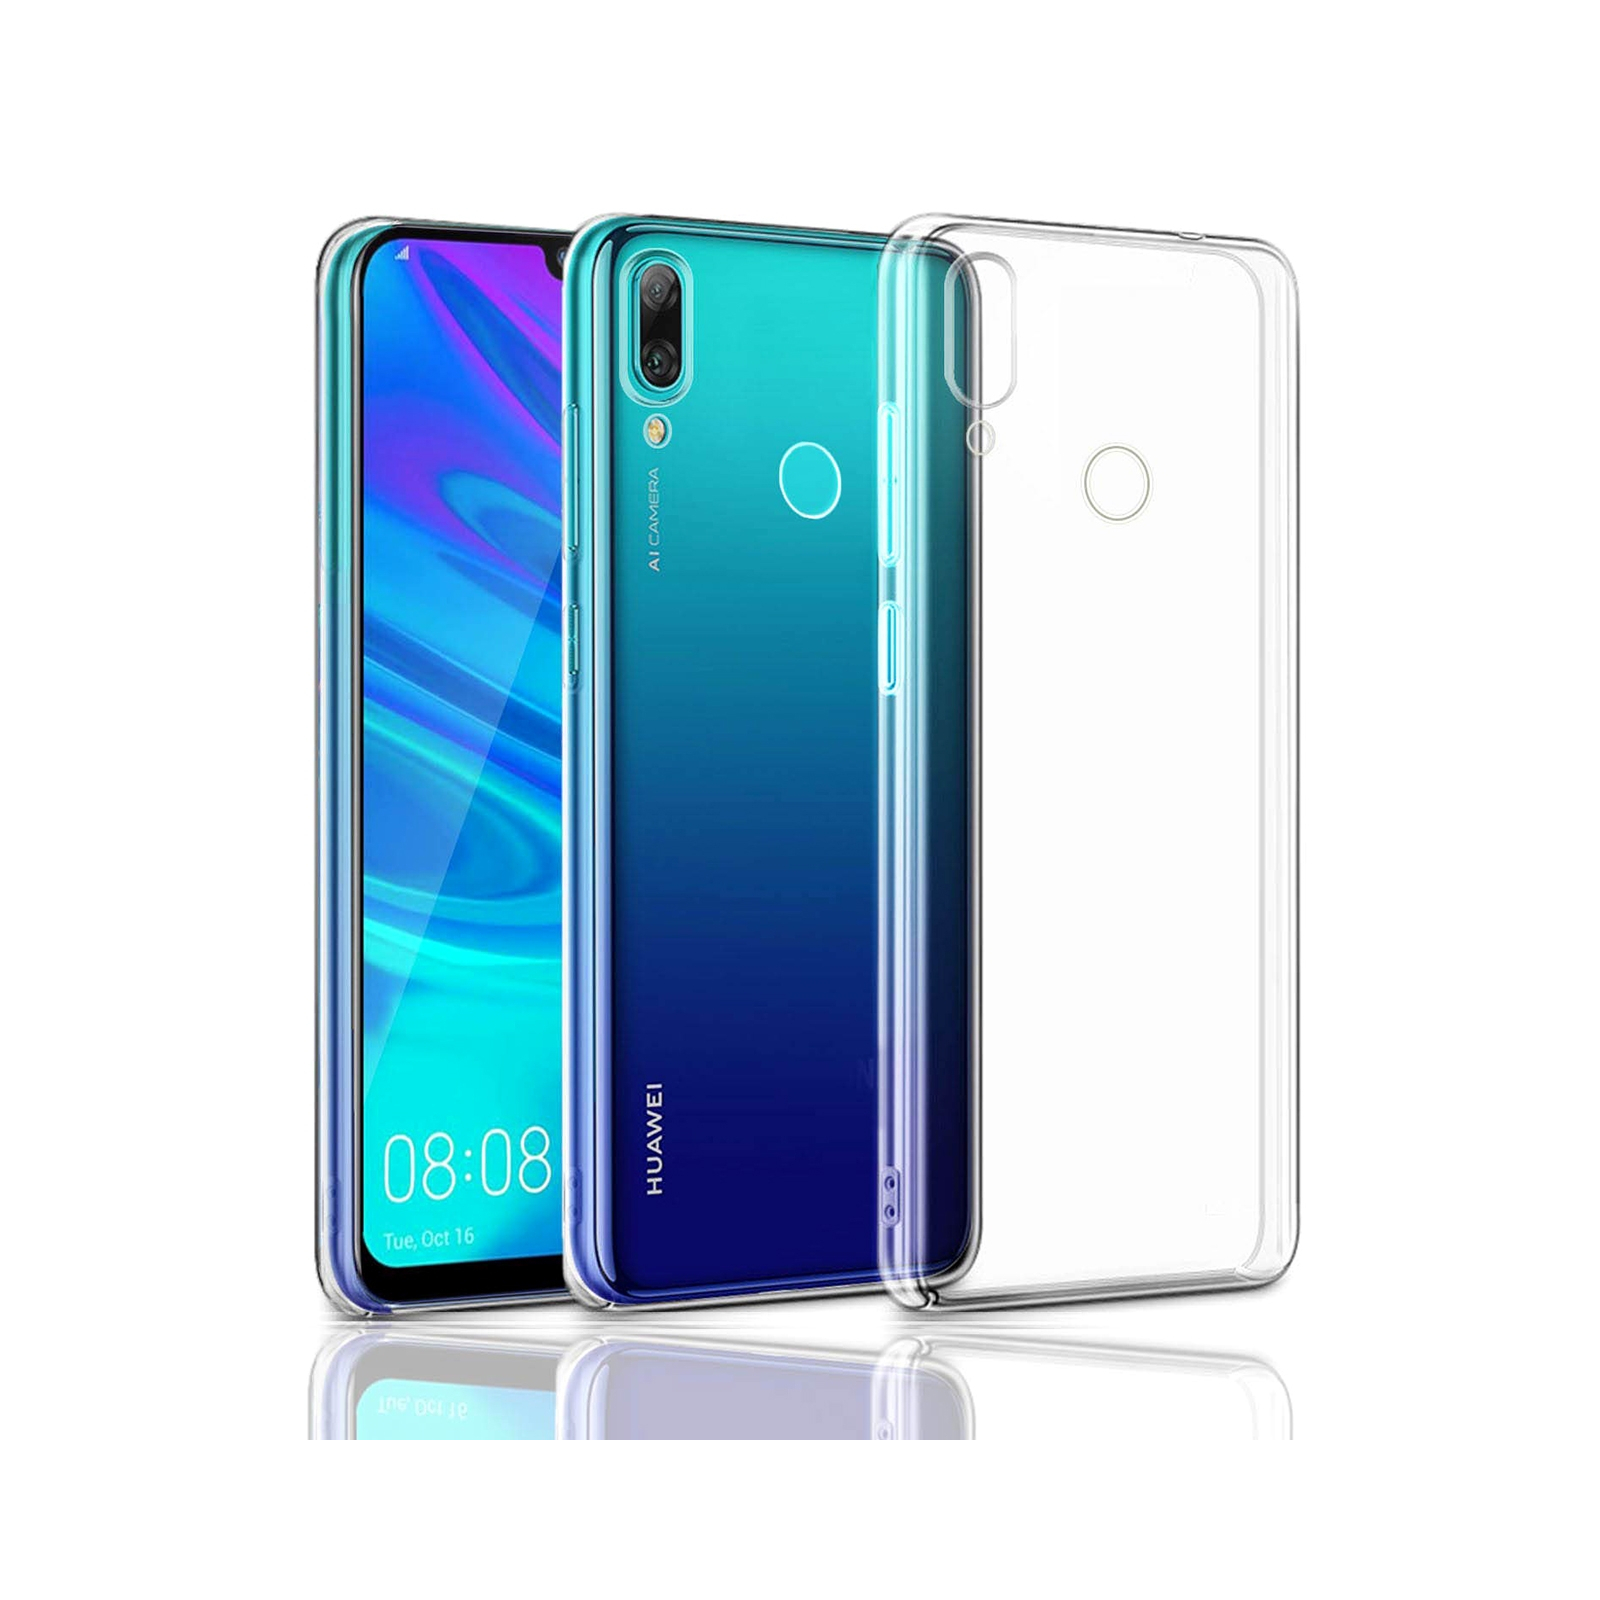 Чехол для мобильного телефона Laudtec для Huawei P Smart 2019 Clear tpu (Transperent) (LC-HPS19C)